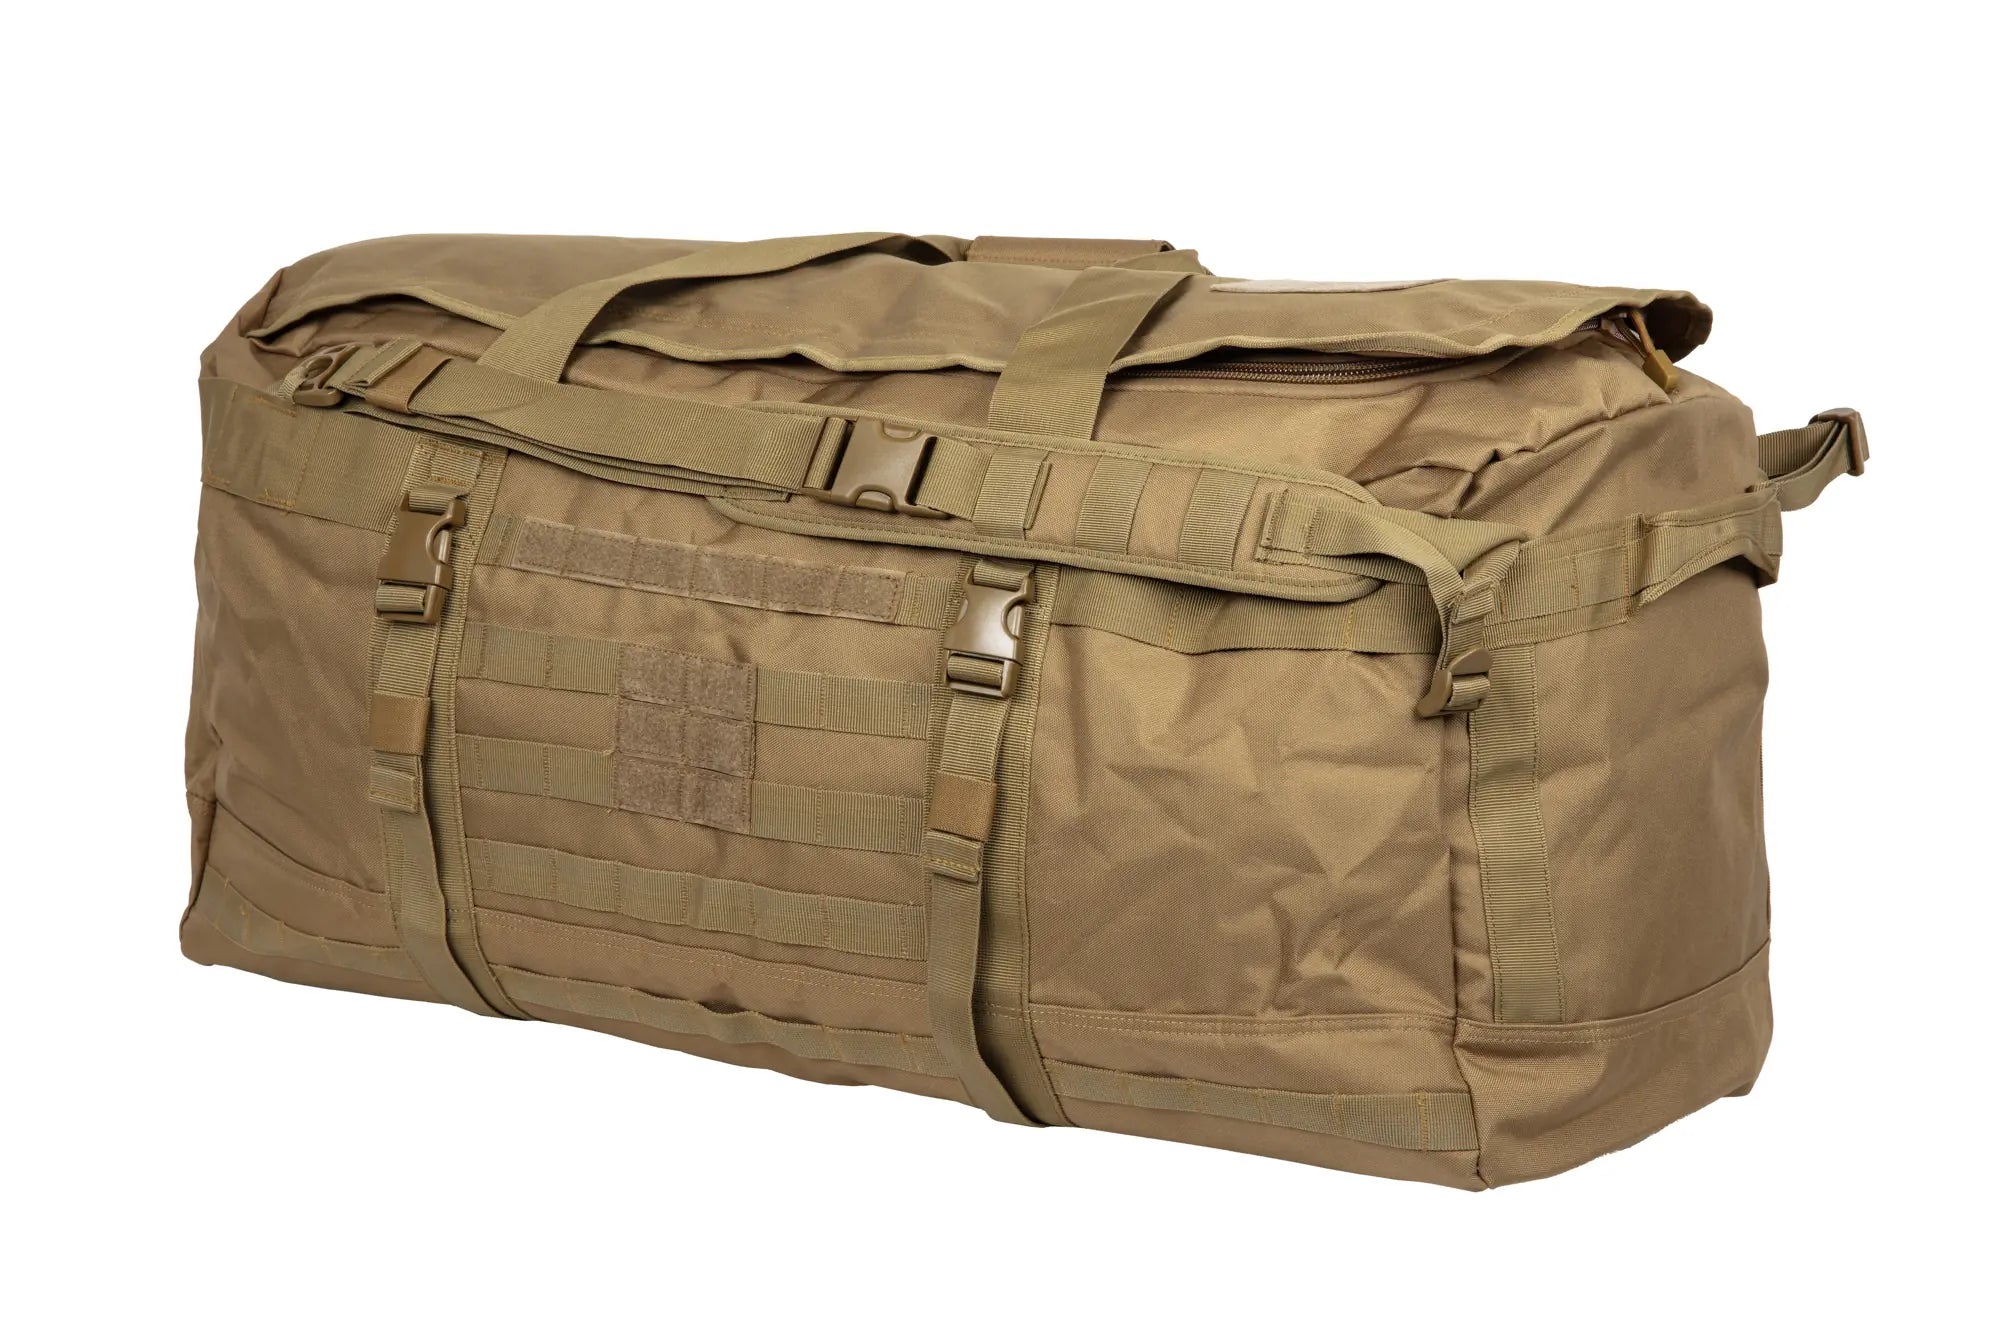 GFC Tactical 120 L tactical equipment bag. Tan